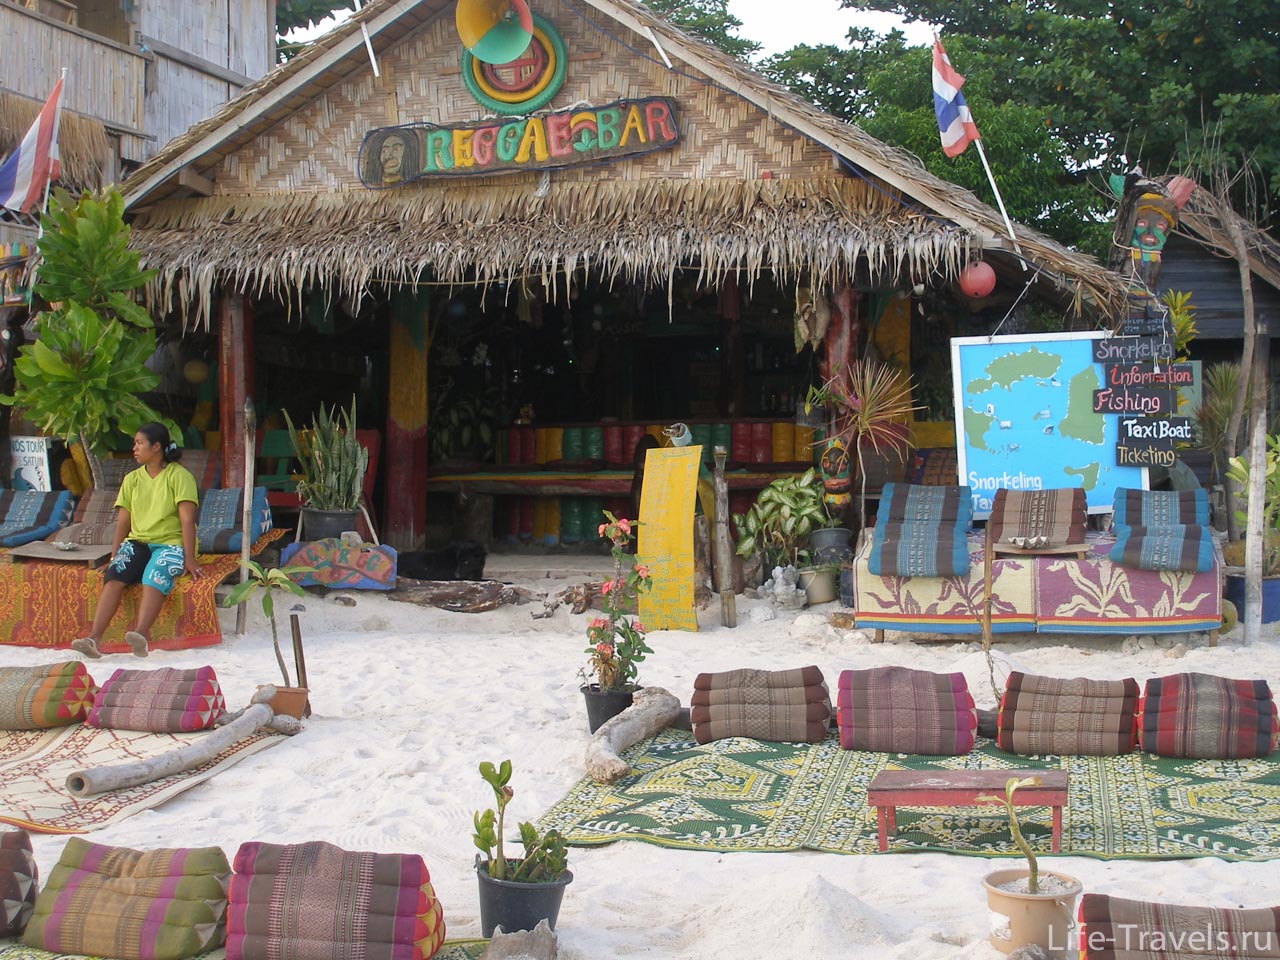 restaurant and bar on the beach near the ocean